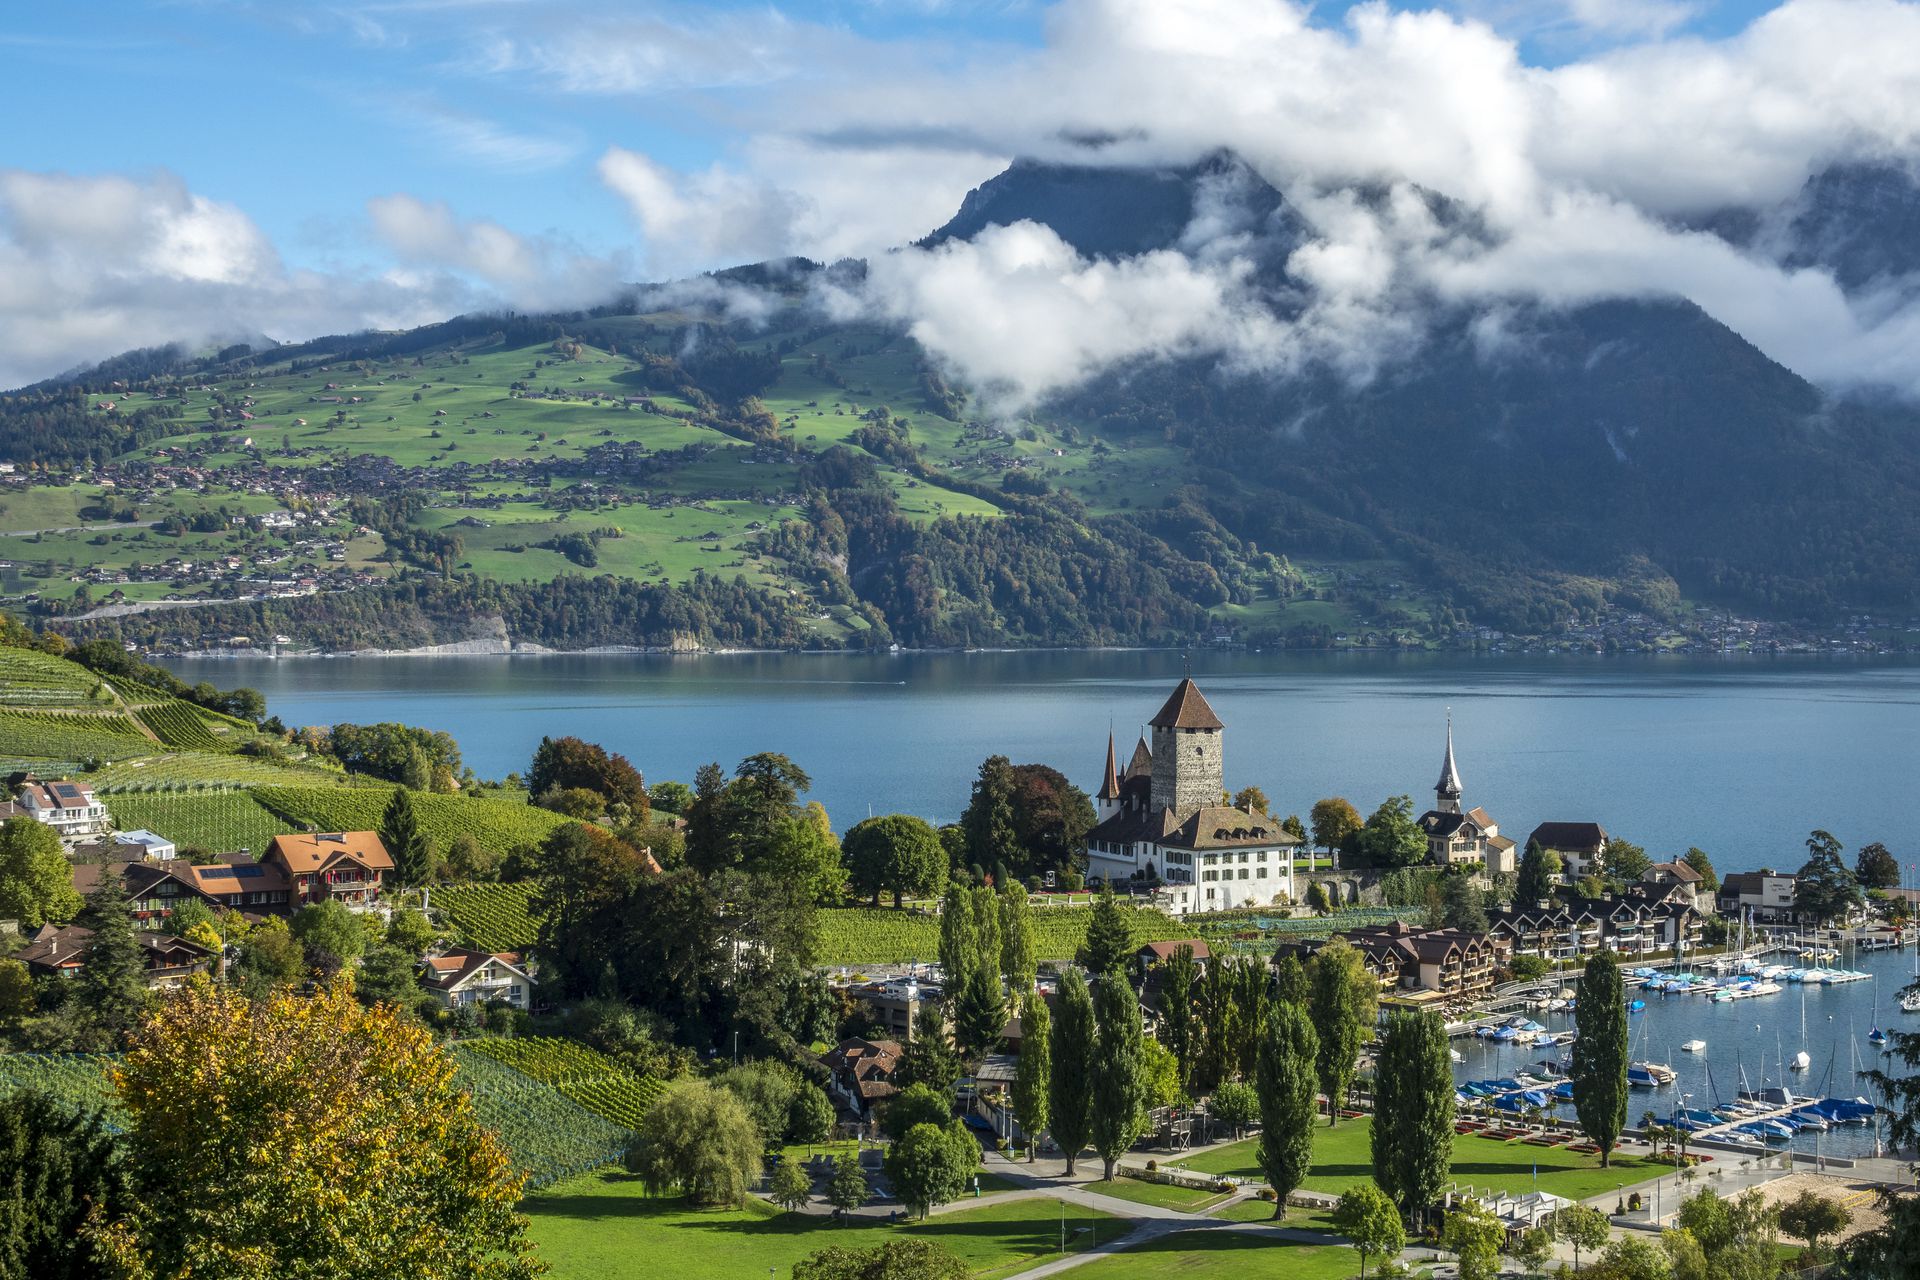 施皮茨小镇位于瑞士图恩湖南岸的一水湾边上，这里被雪山环抱，空气清新，被称为瑞士最美的小镇之一。碧水如镜的湖面上，尼德宏峰山脉一直延伸到伯尔尼阿尔卑斯山脉，构成一幅壮丽的全景图。（视觉中国）